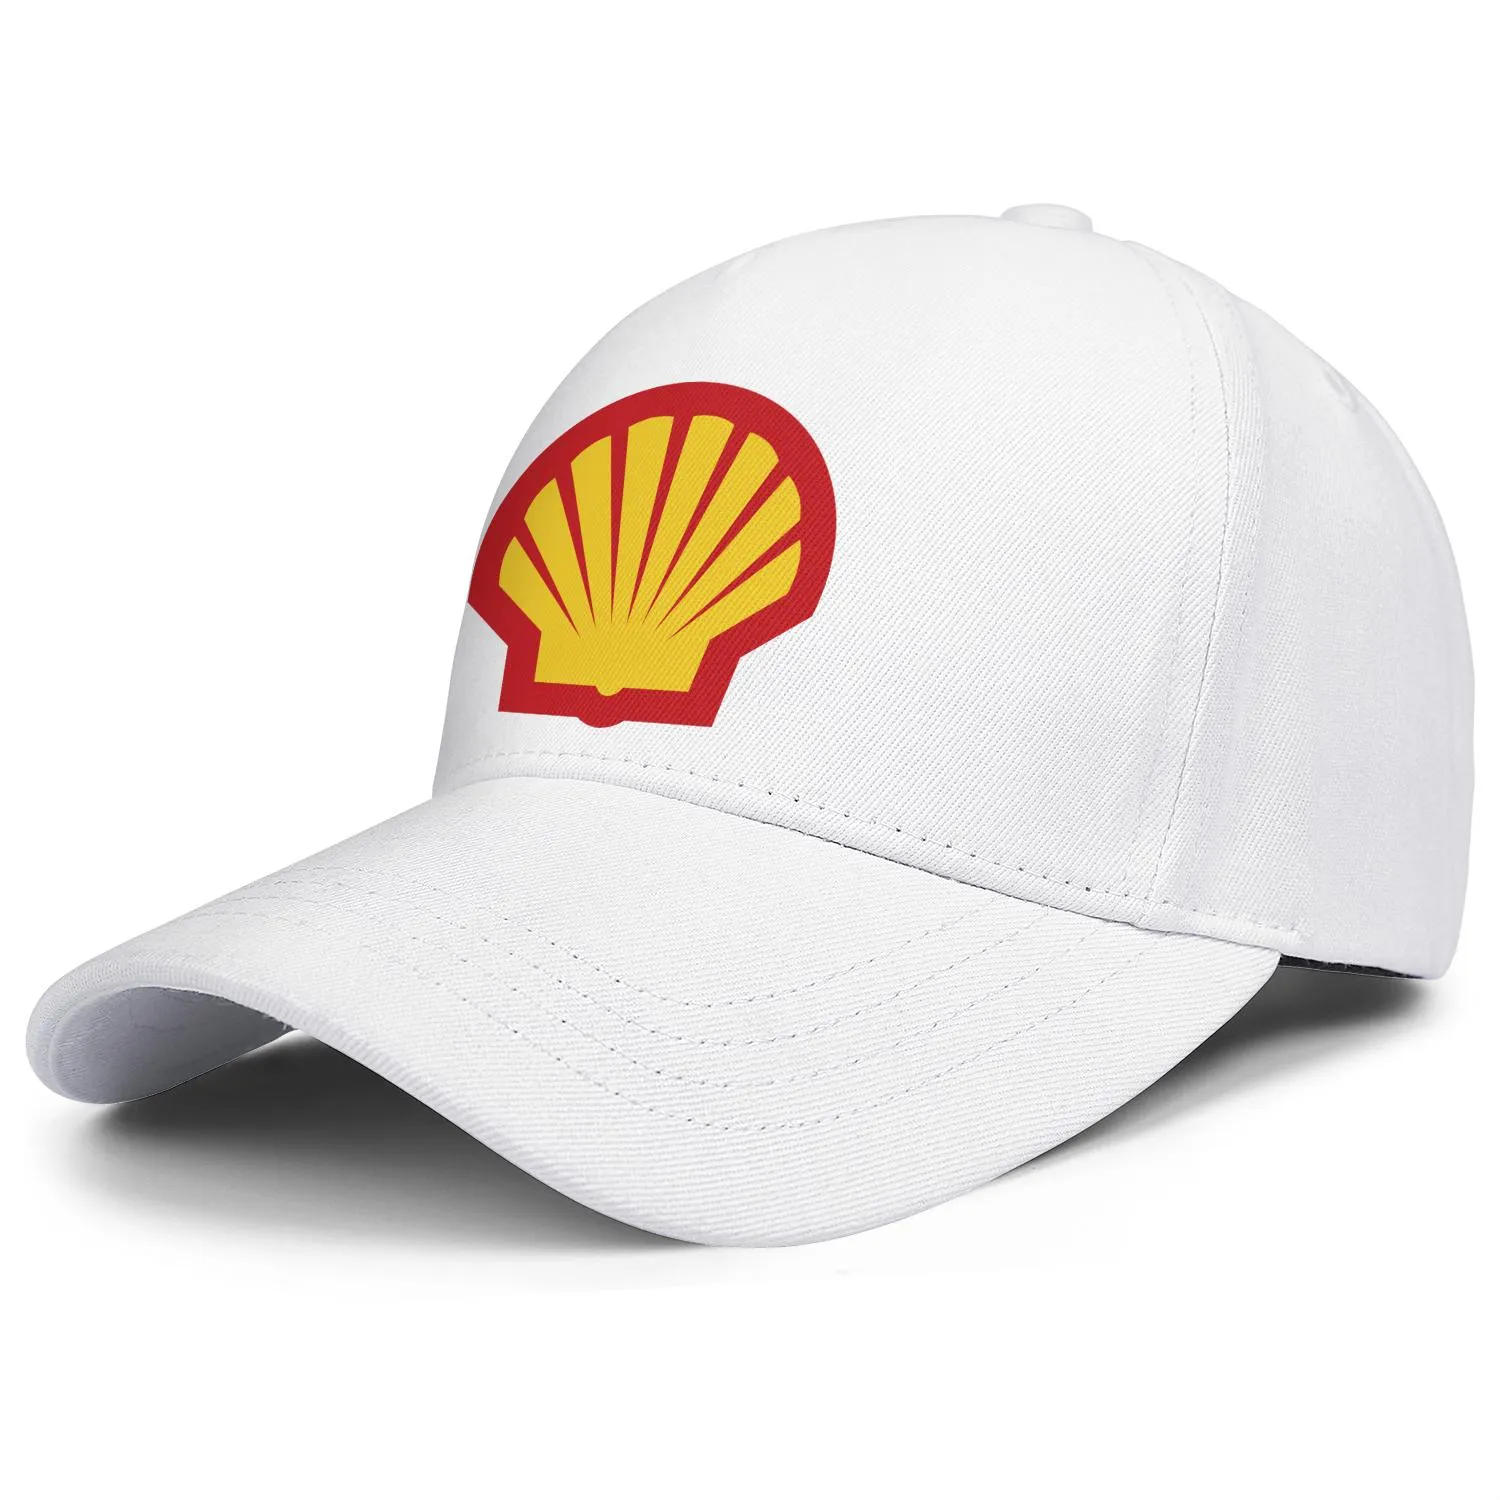 Logo de la station-service à essence Shell pour hommes et femmes casquette de camionneur ajustable ajustée vintage mignon baseballhats localisateur d'essence symbo311B